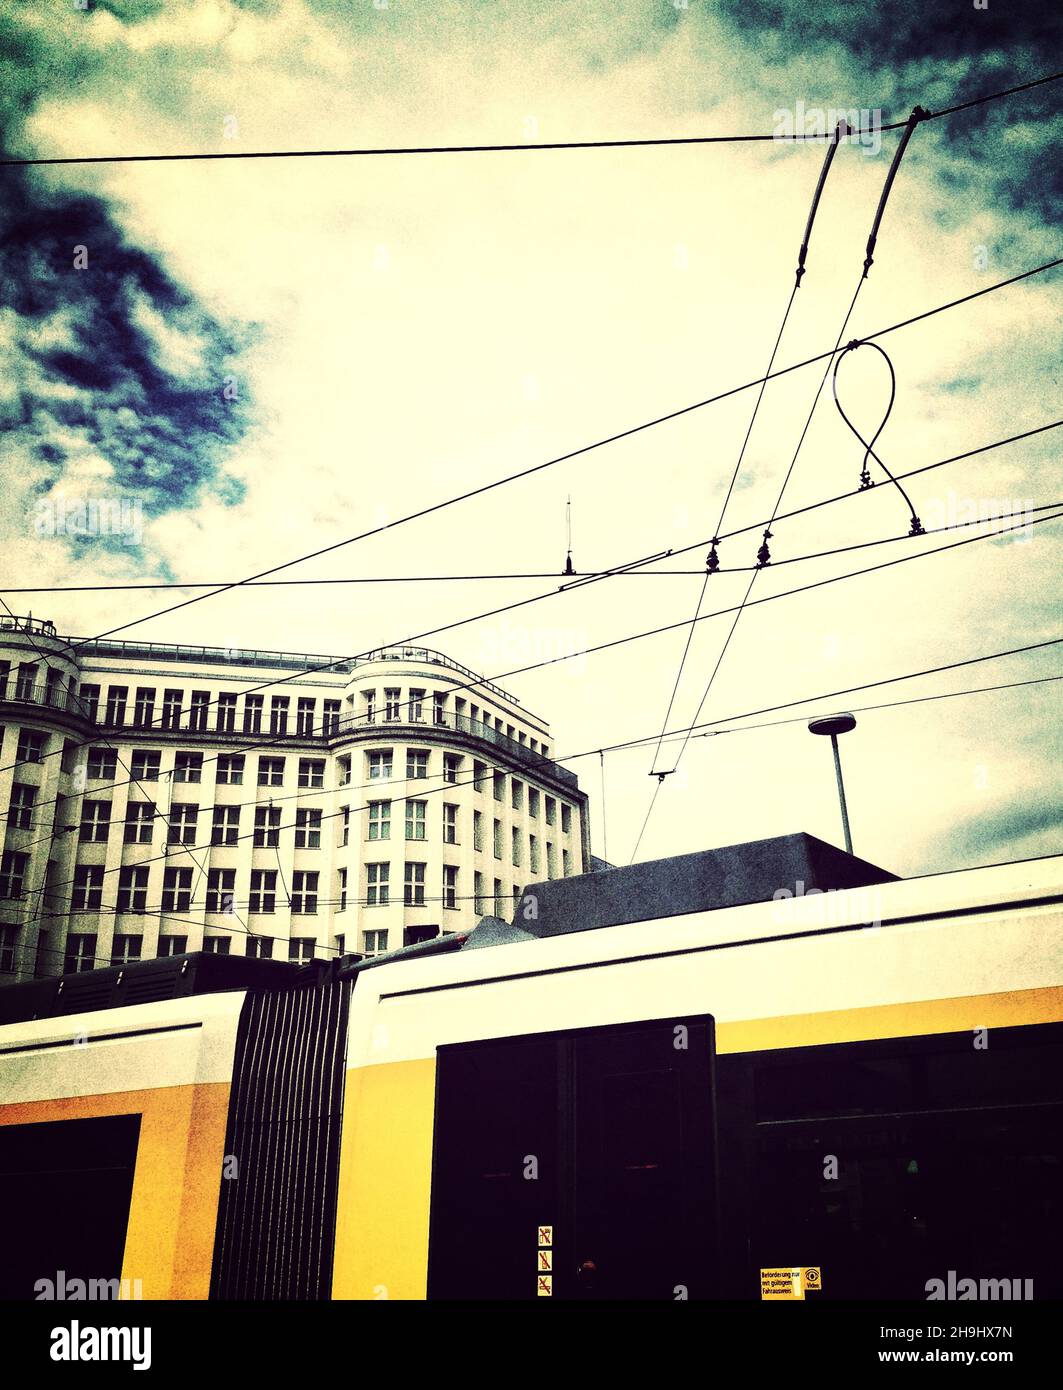 Ein Blick auf das Soho House in Berlin hinter einer Straßenbahn (ein Bild, das mit der Snapseed-App erstellt wurde und Teil einer Reihe von experimentellen Bildern ist, die auf dem iPhone aufgenommen und verarbeitet wurden) Stockfoto